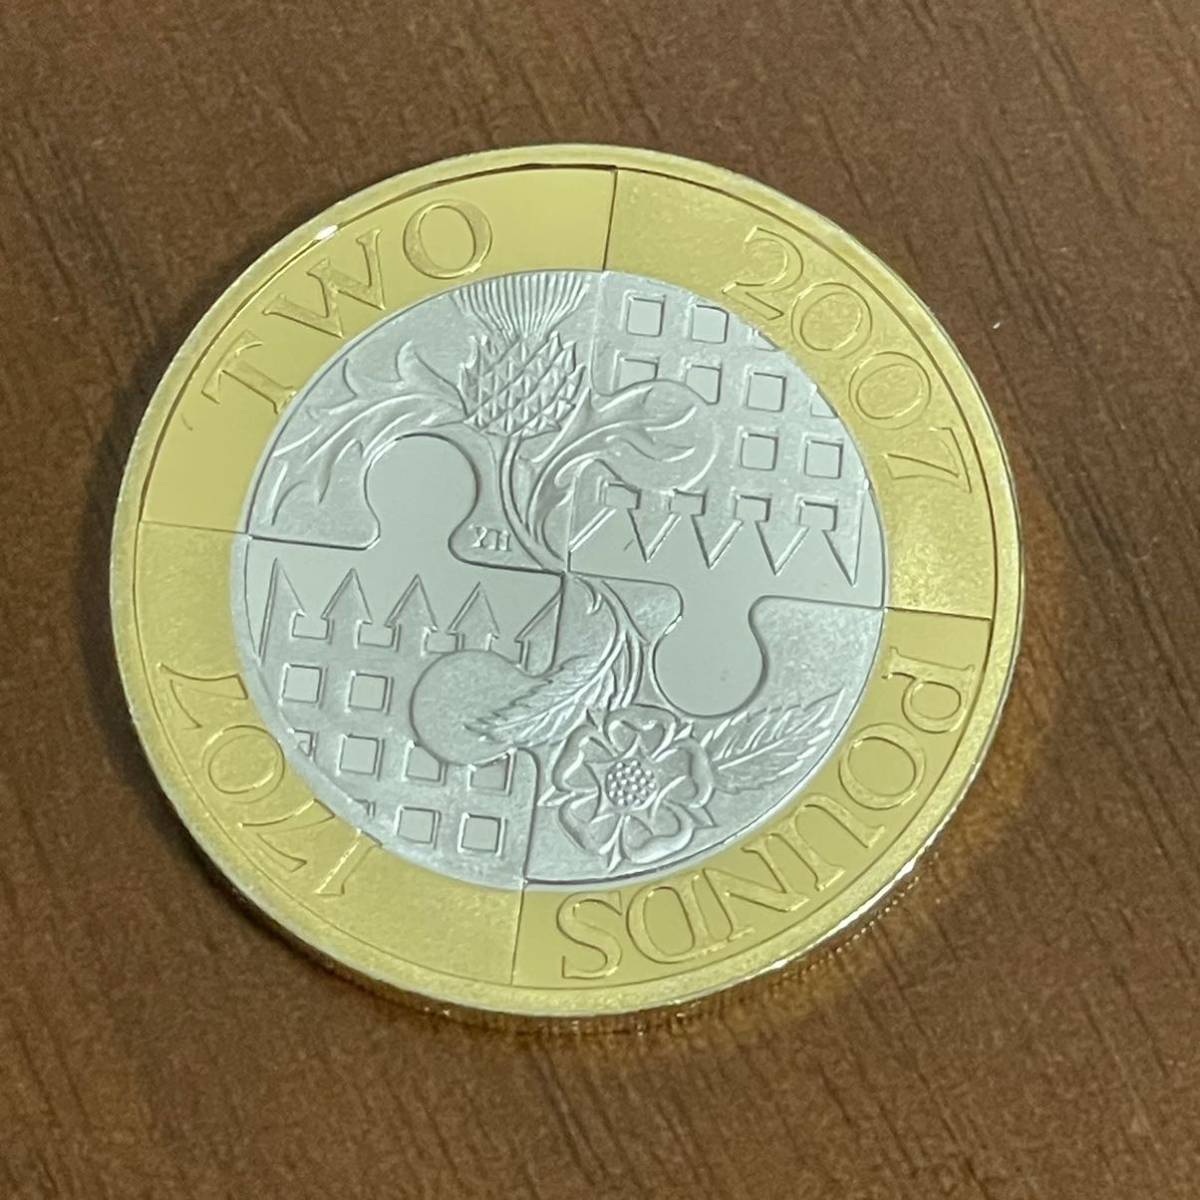 エリザベス2世 2ポンド 銀貨 バイメタル 1707年 2007年 イギリス 硬貨 2色 ゴールド×シルバーカラー コイン 英国 記念 _画像4